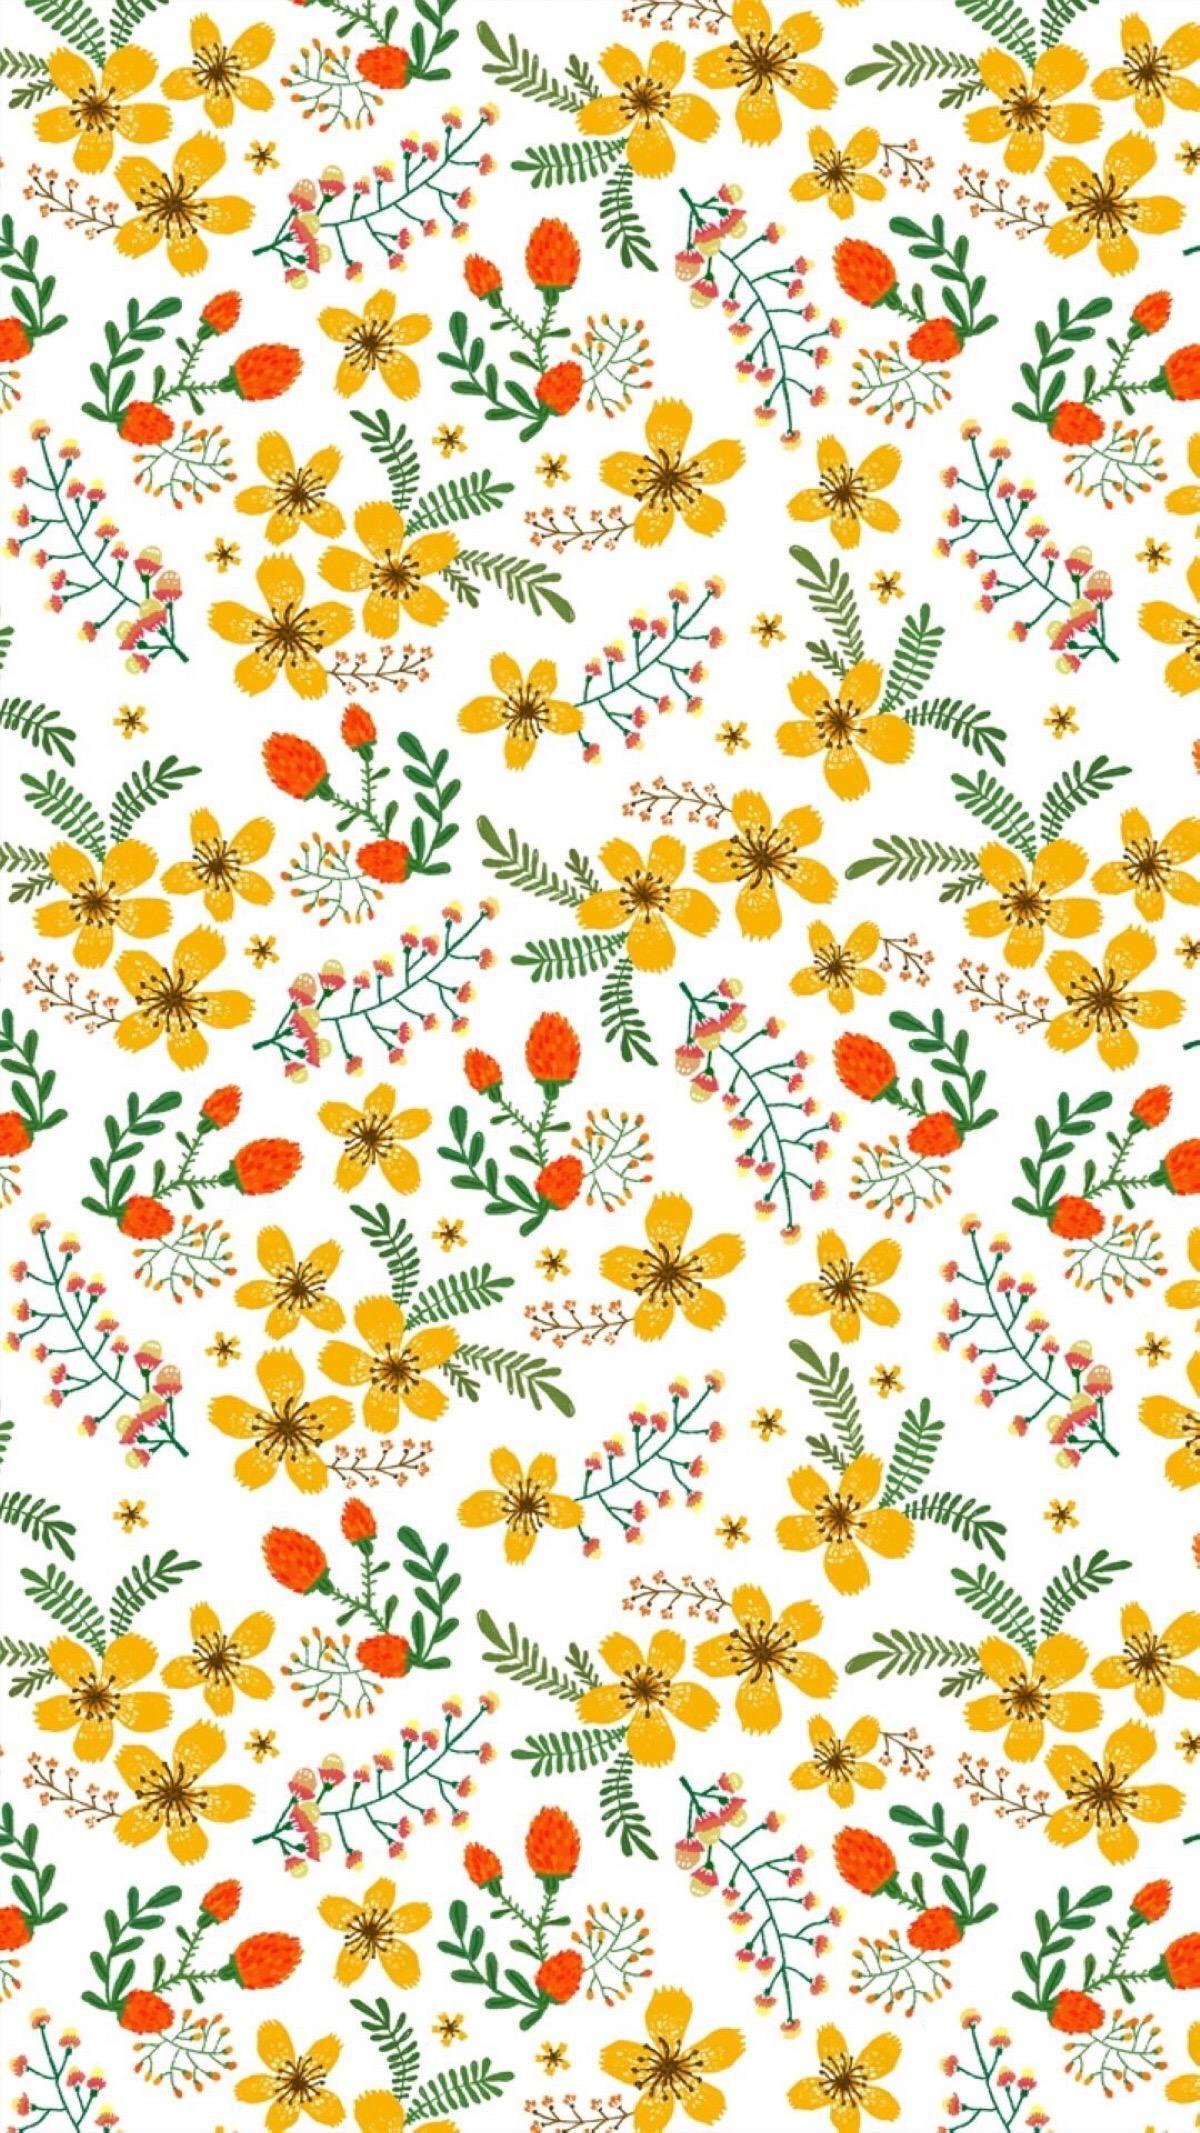 new design for skirt. Flower wallpaper, iPhone